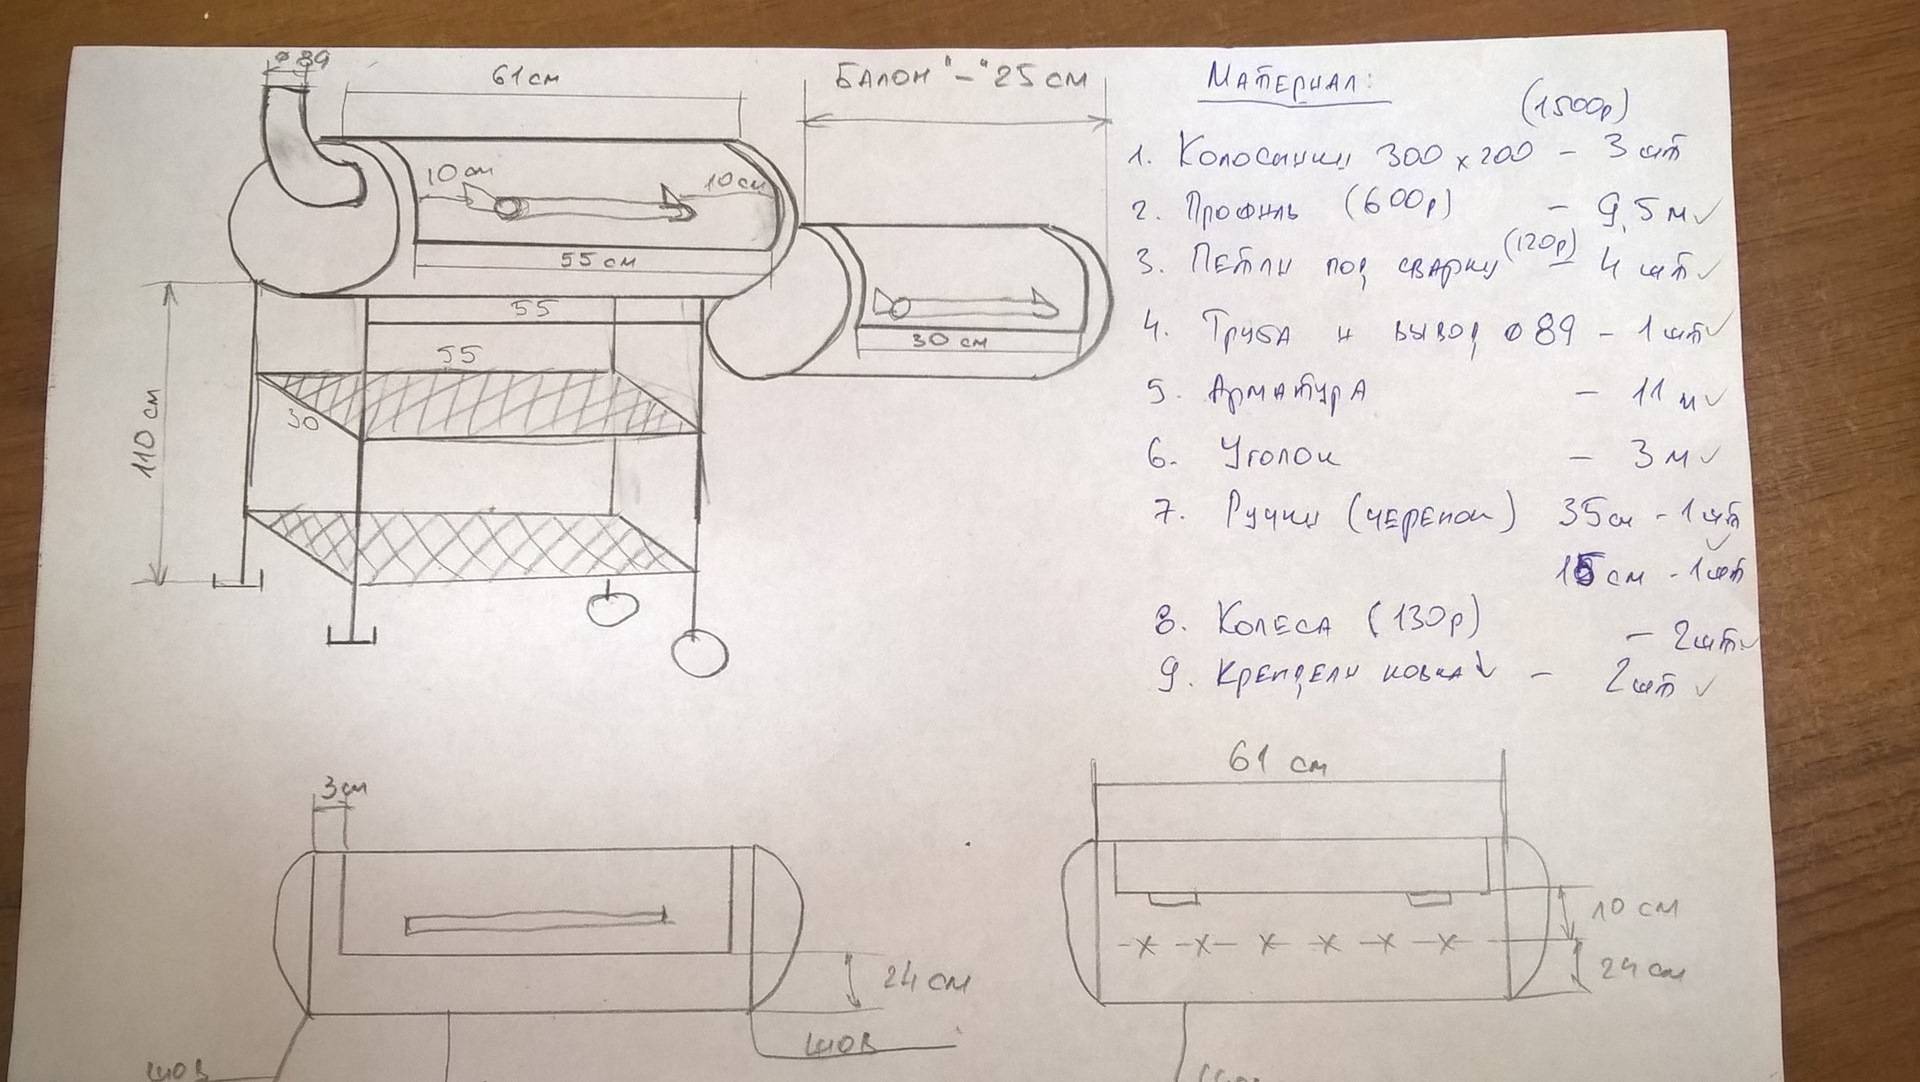 Как изготовить мангал из газового баллона: примеры и пошаговая инструкция